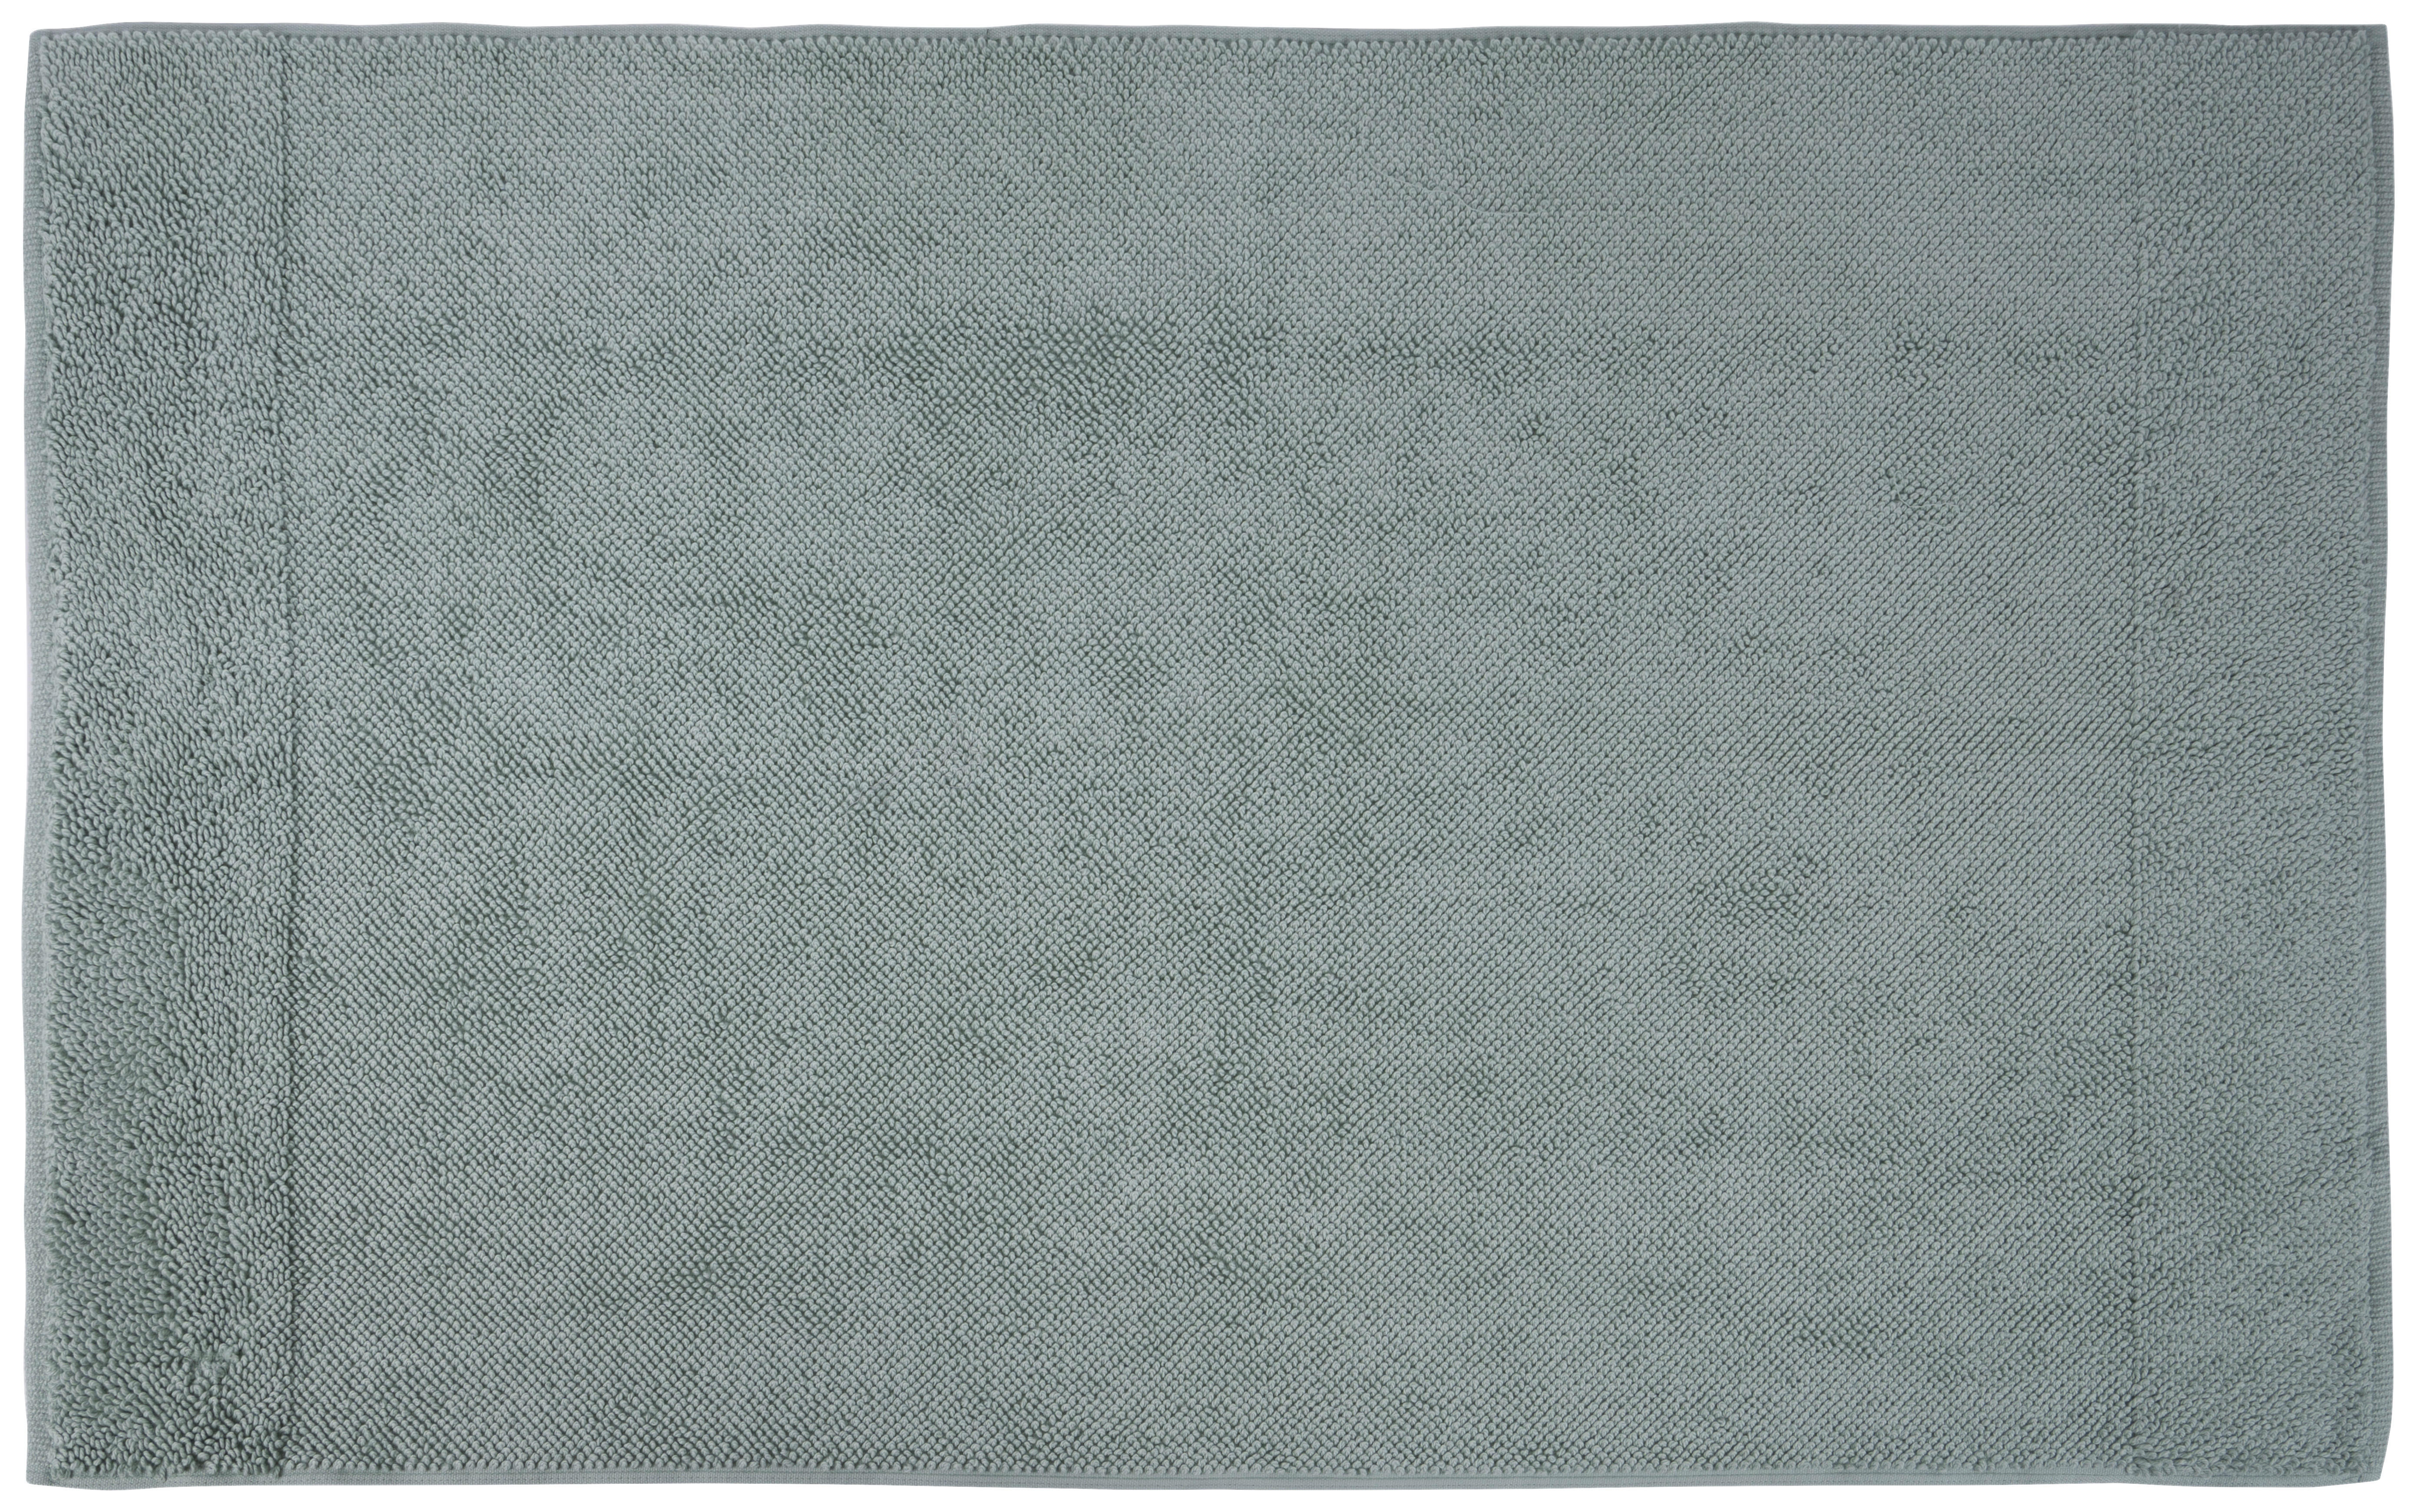 BADEMATTE 70/120 cm  - Mintgrün, KONVENTIONELL, Textil (70/120cm) - Bio:Vio